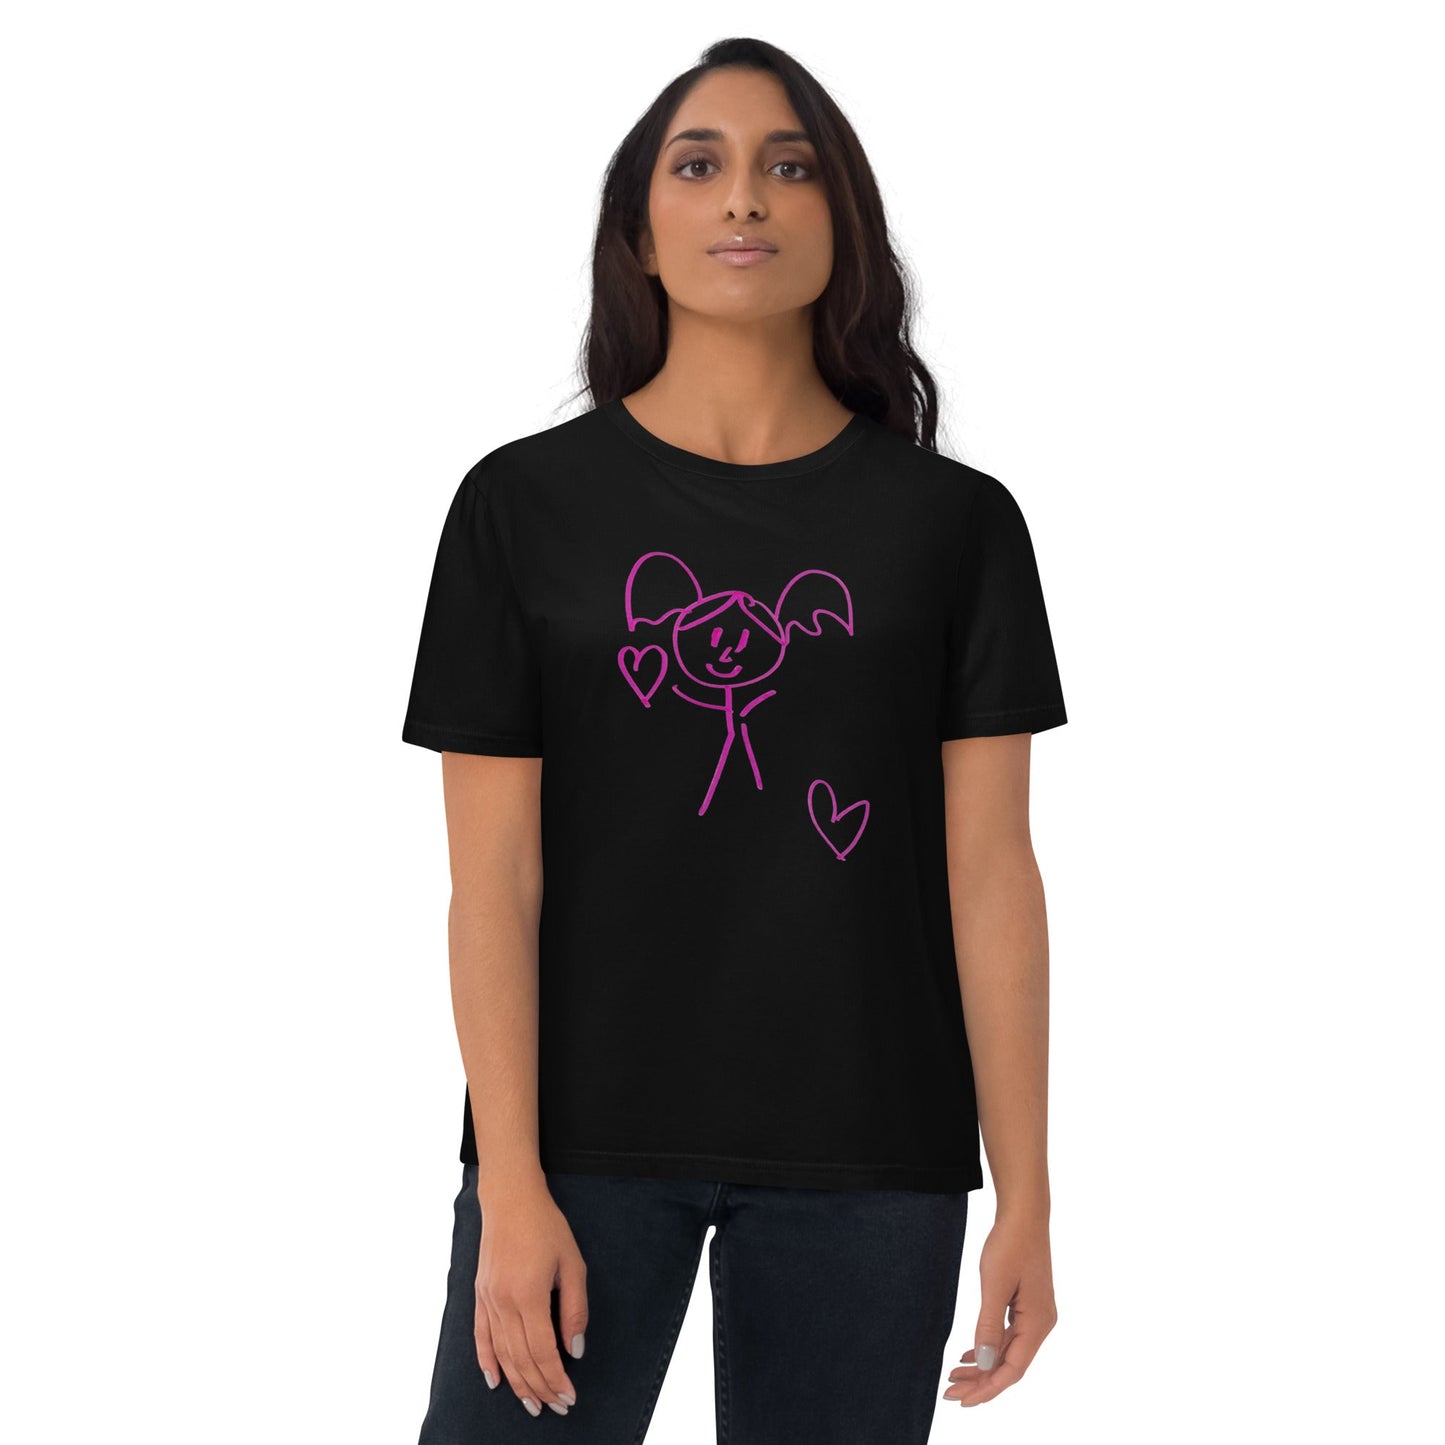 ARTISTIC LOVE GIRL ORGANIC WEARABLE T-SHIRT-Wearable art t-shirt-mysticalcherry